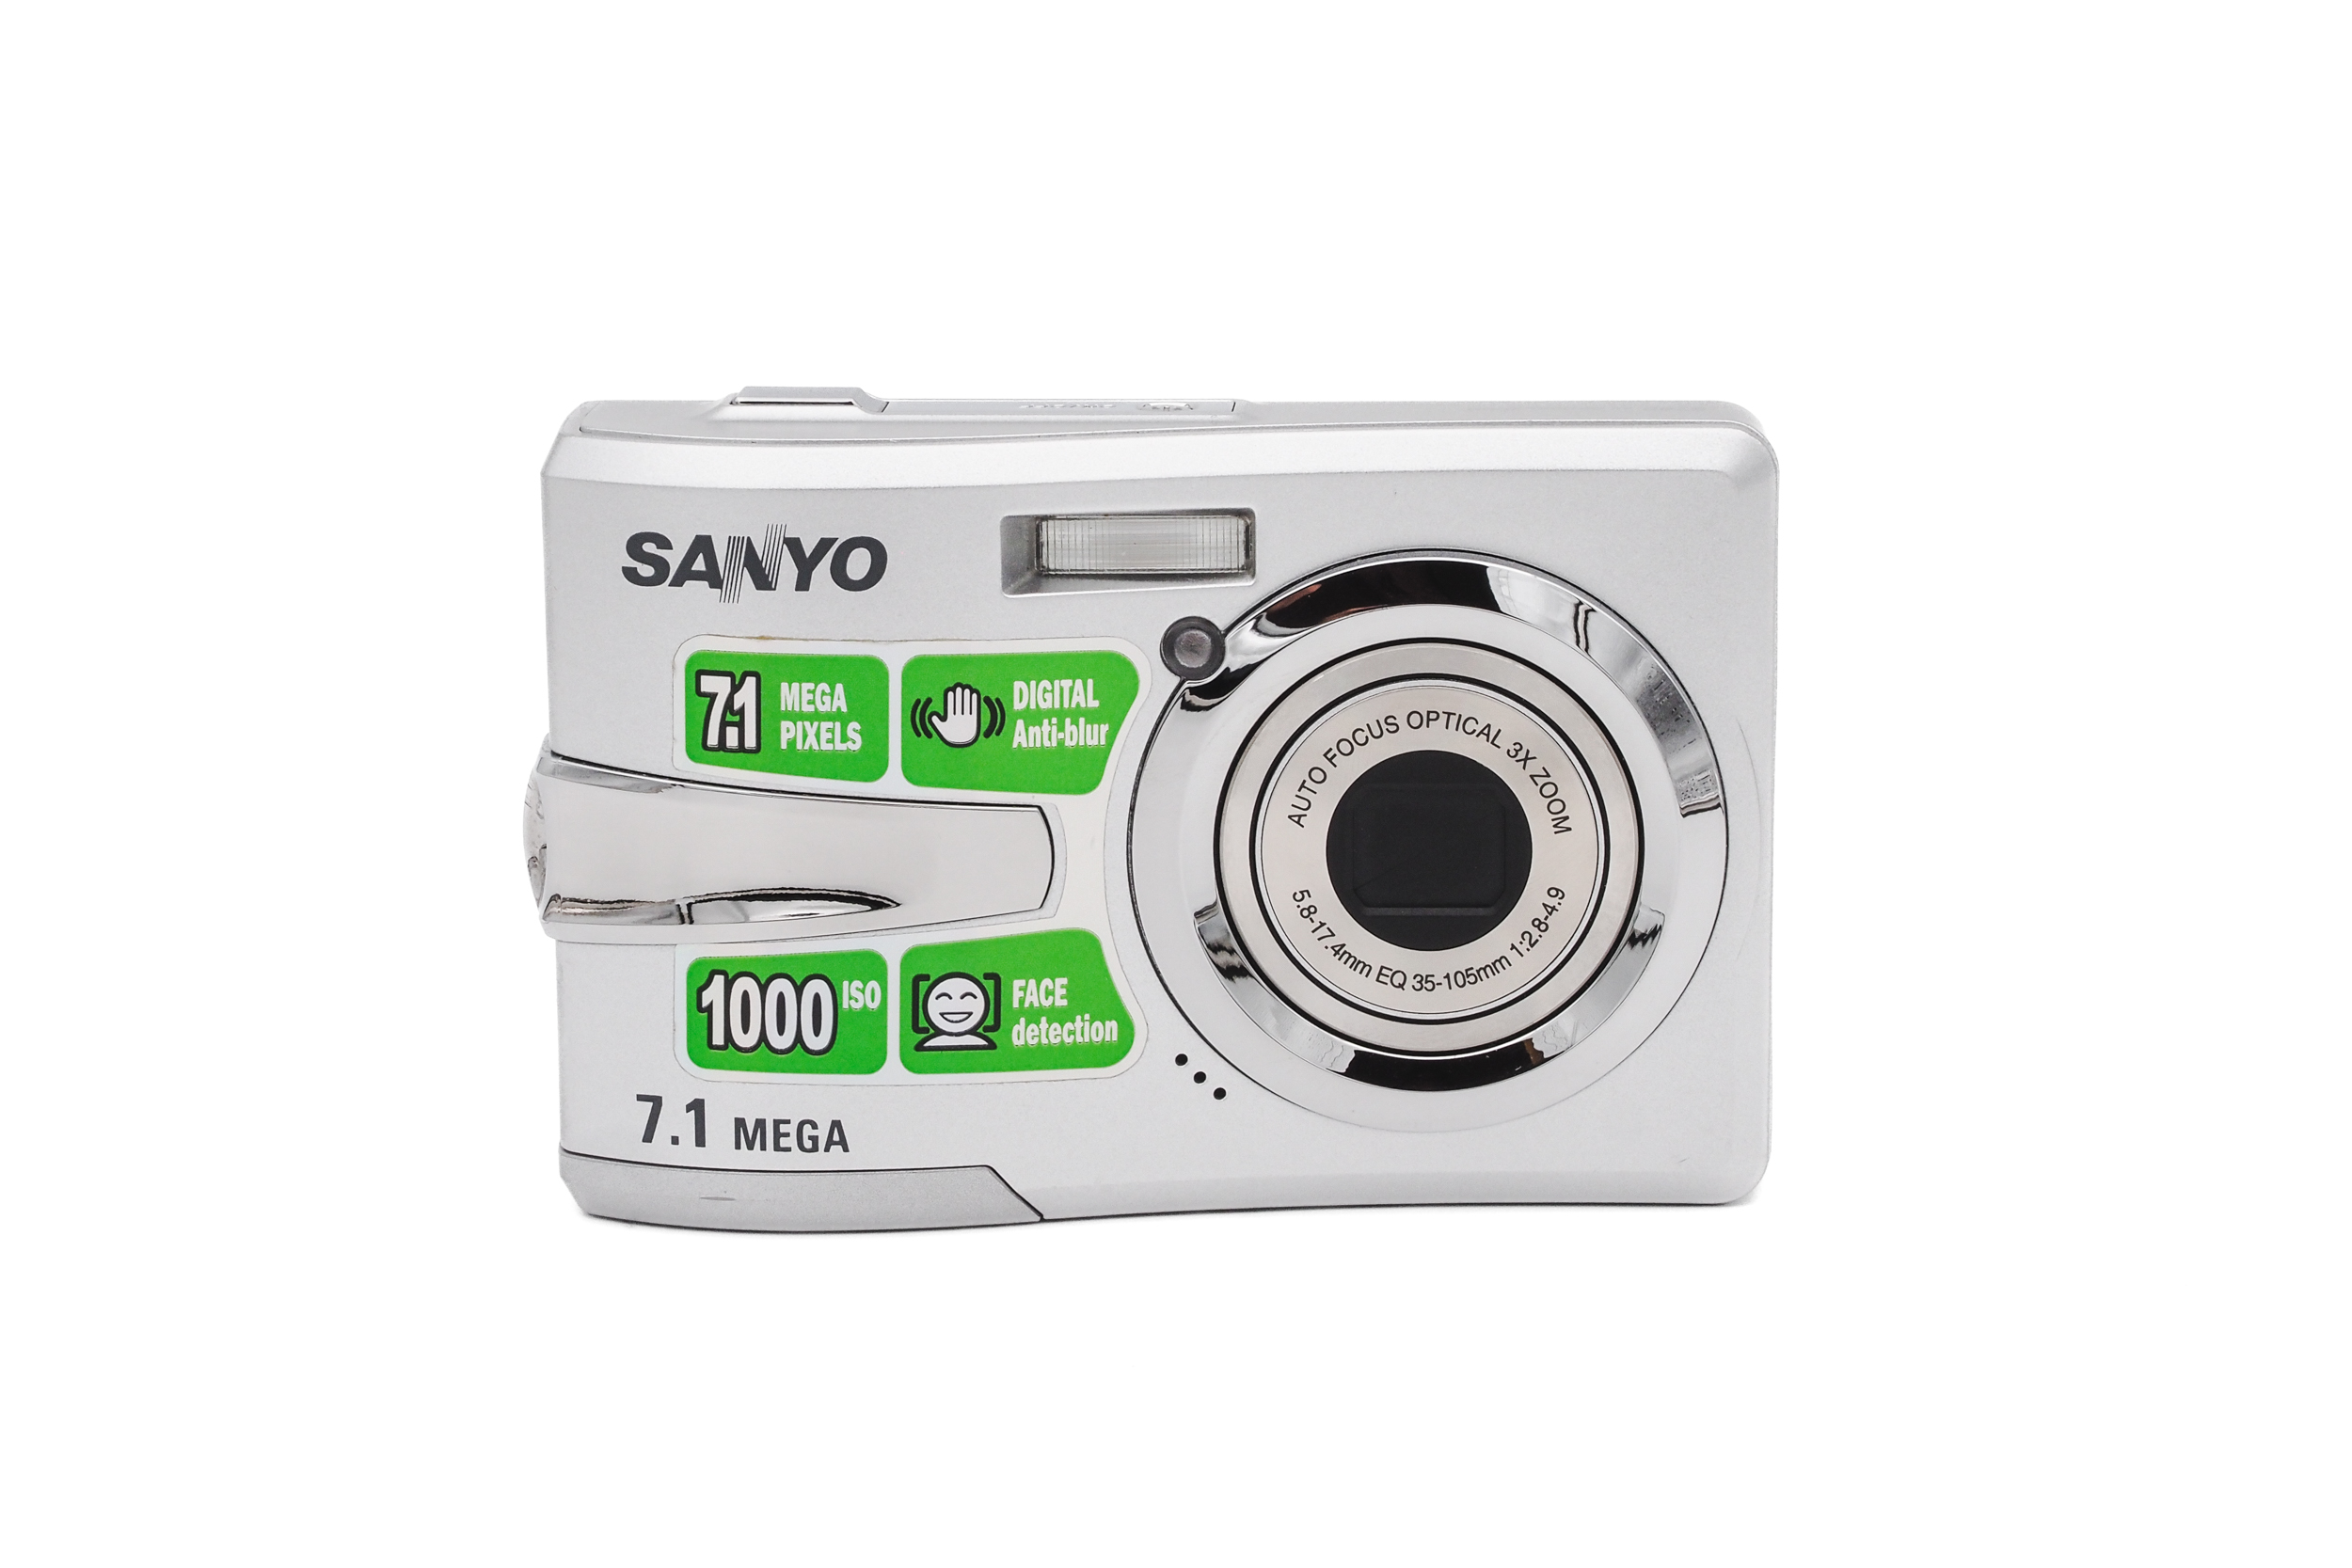 Sanyo S760 2007